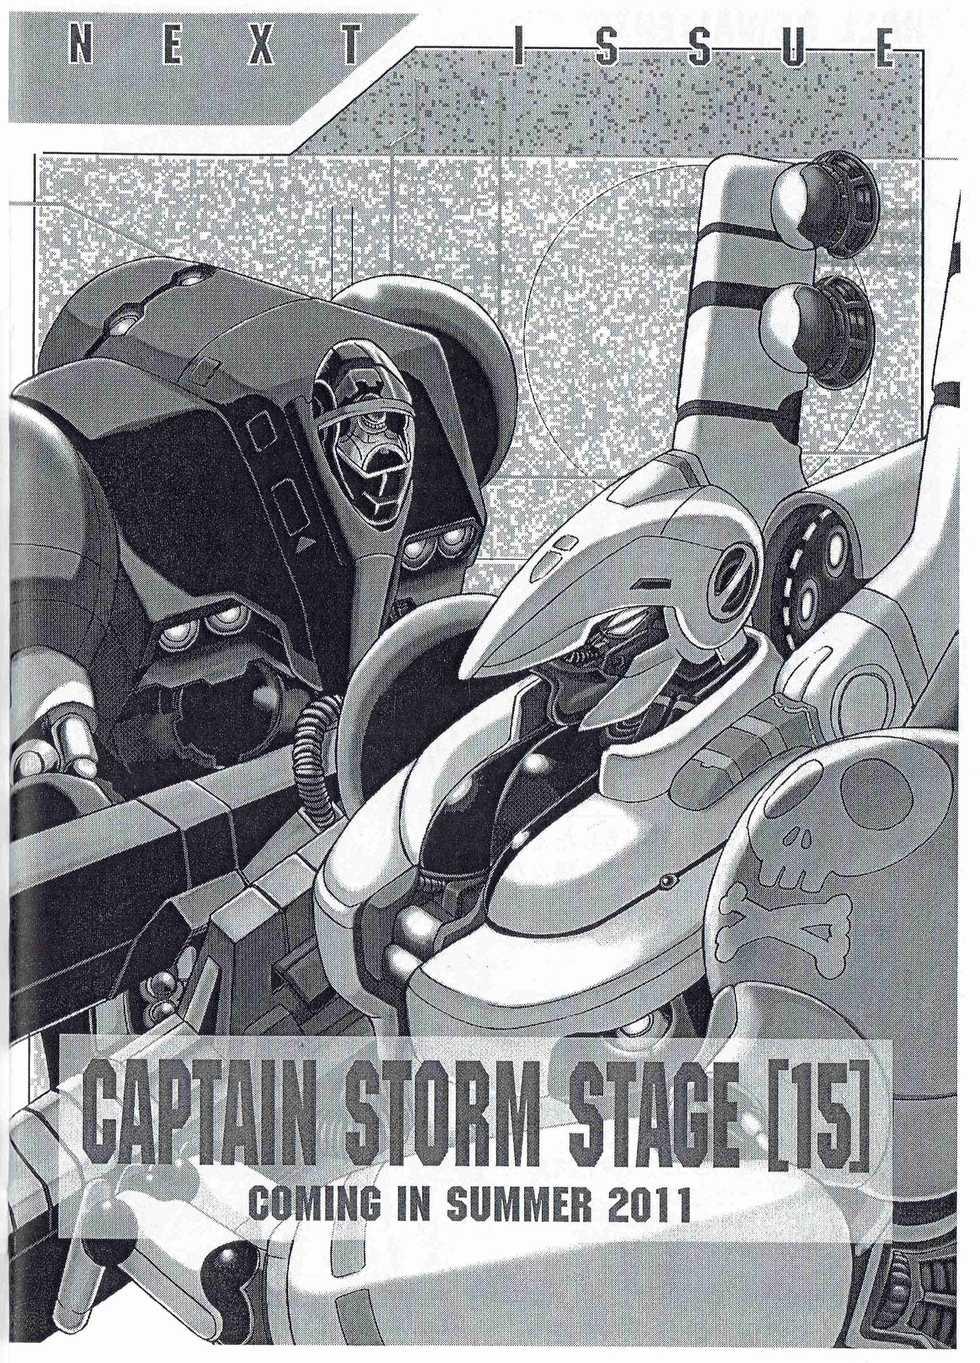 [Kyuukisidan(Takesin)]CAPTAIN STORM STAGE 14 (Capcom) - Page 23